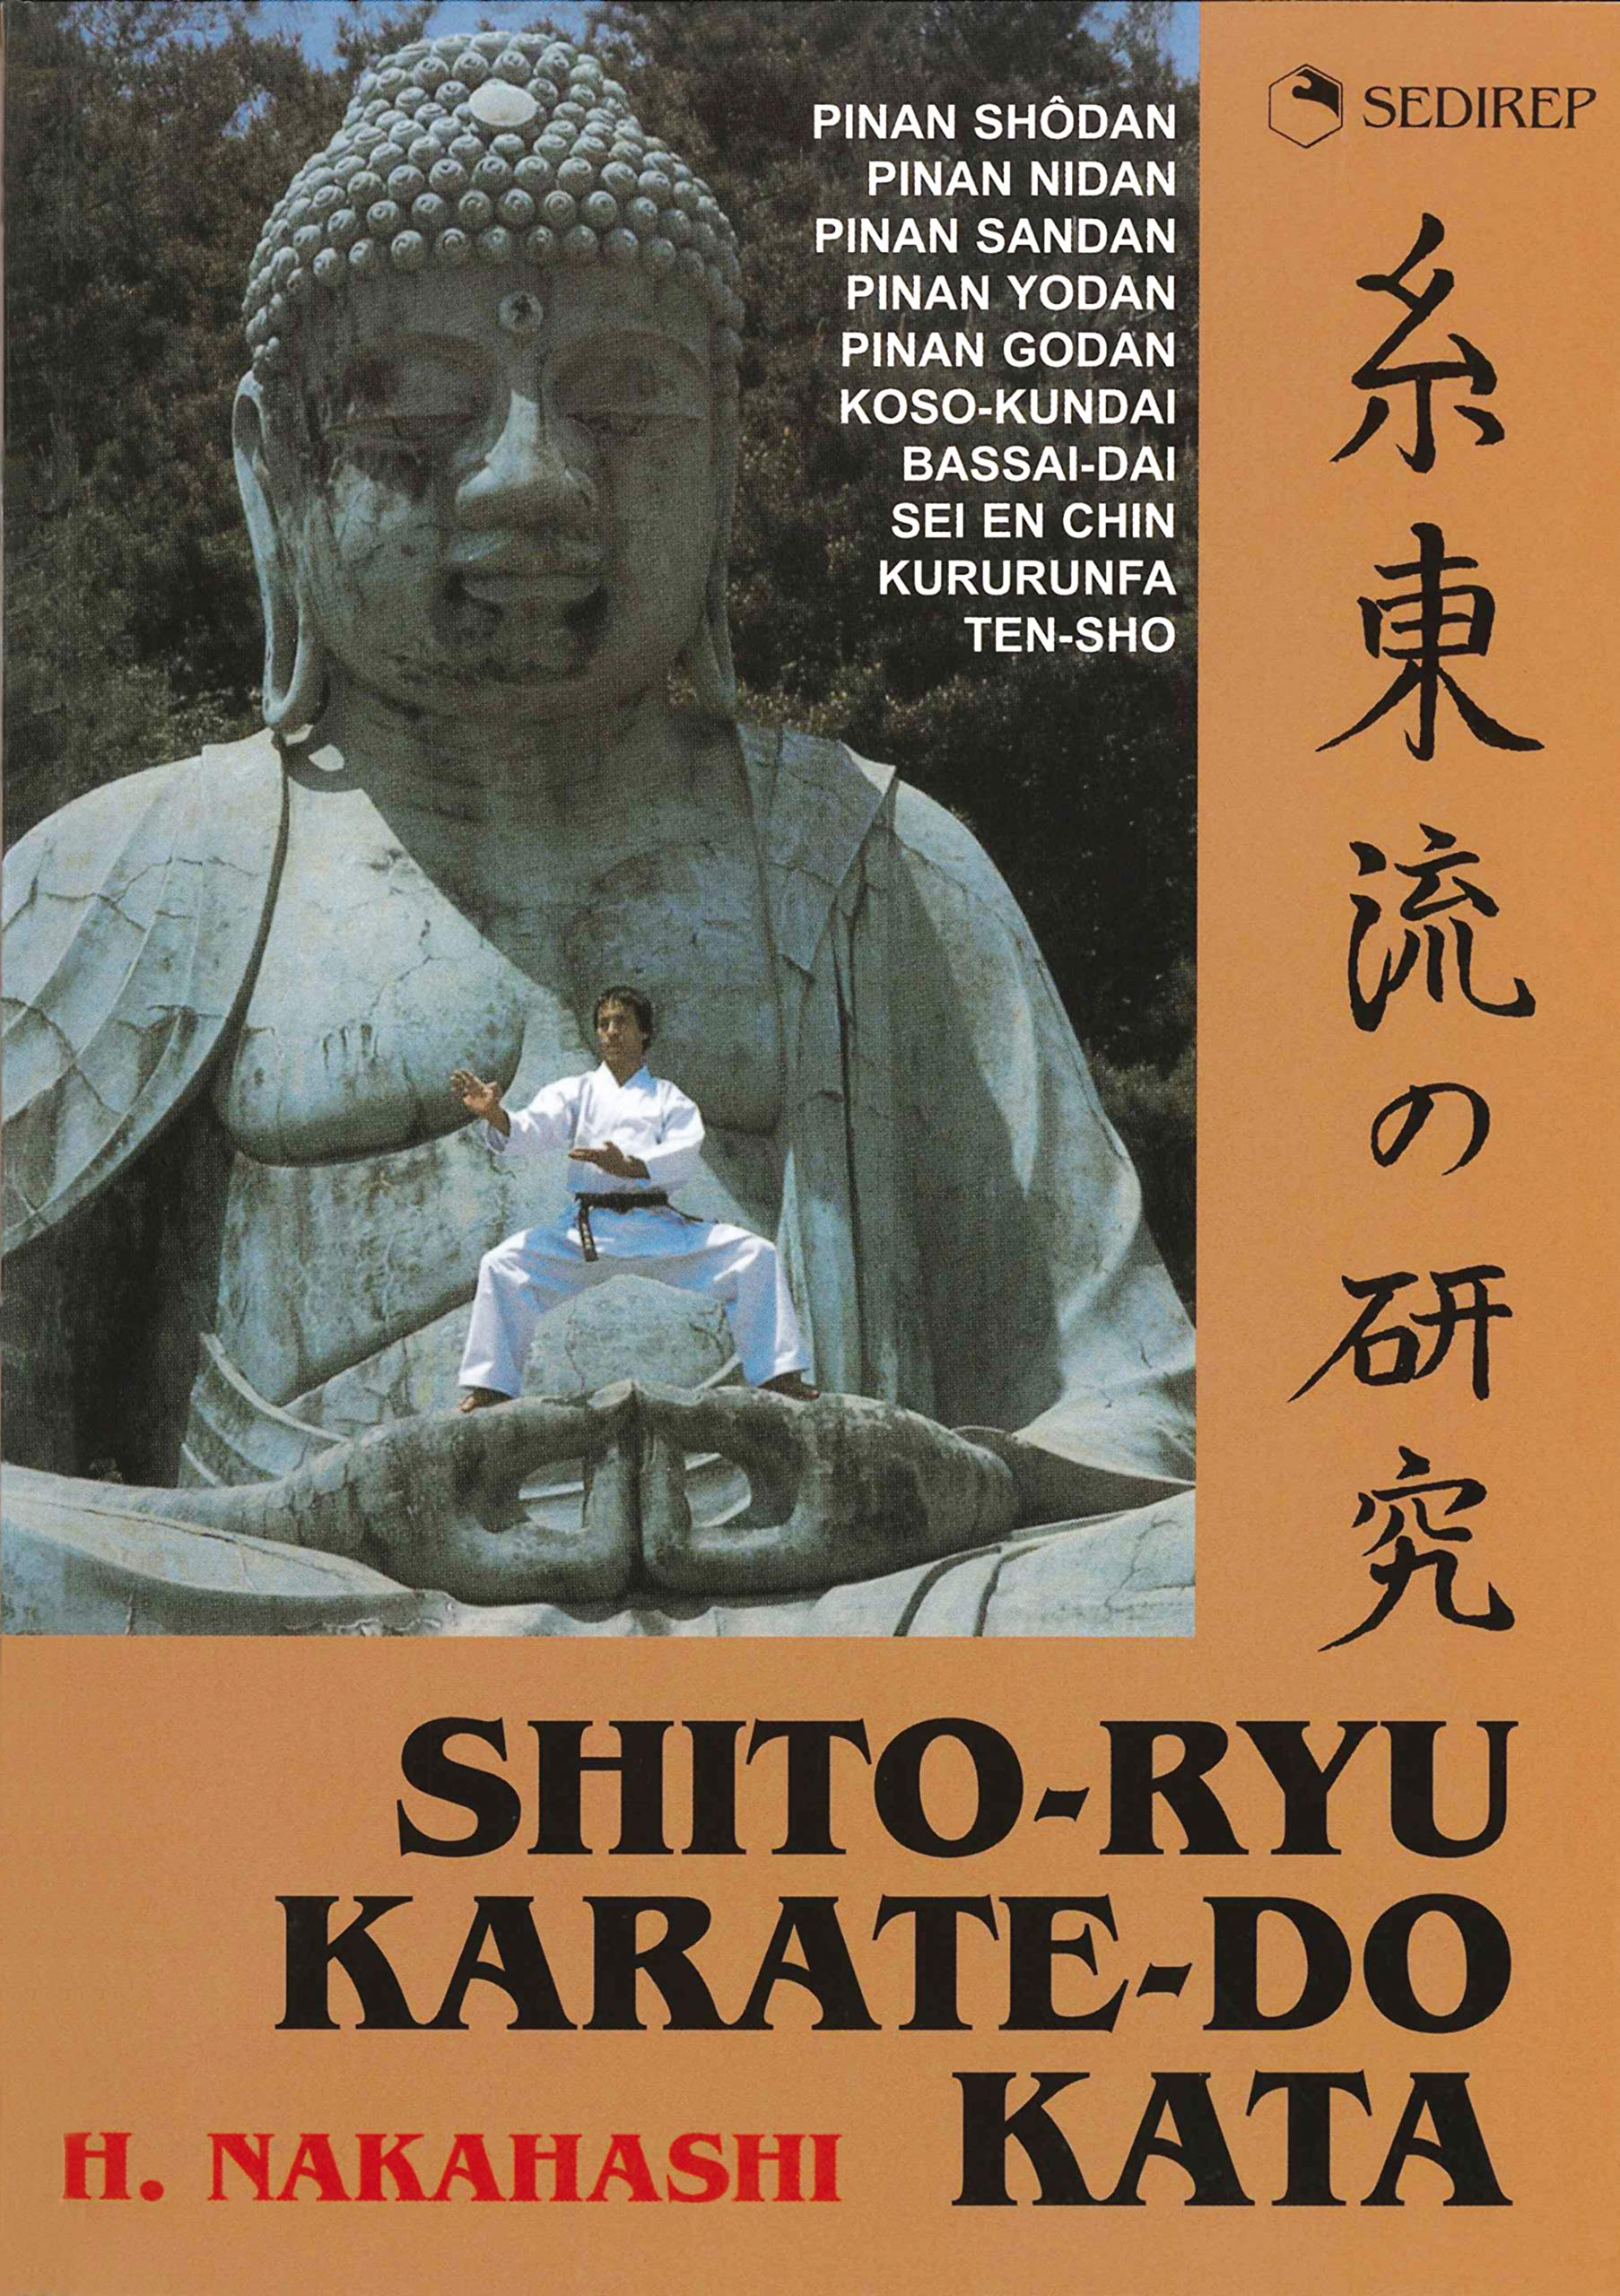 Shito-Ryu, karaté-do kata : pinan shôdan, pinan nidan, pinan sandan, pinan yodan, pinan godan, pinan